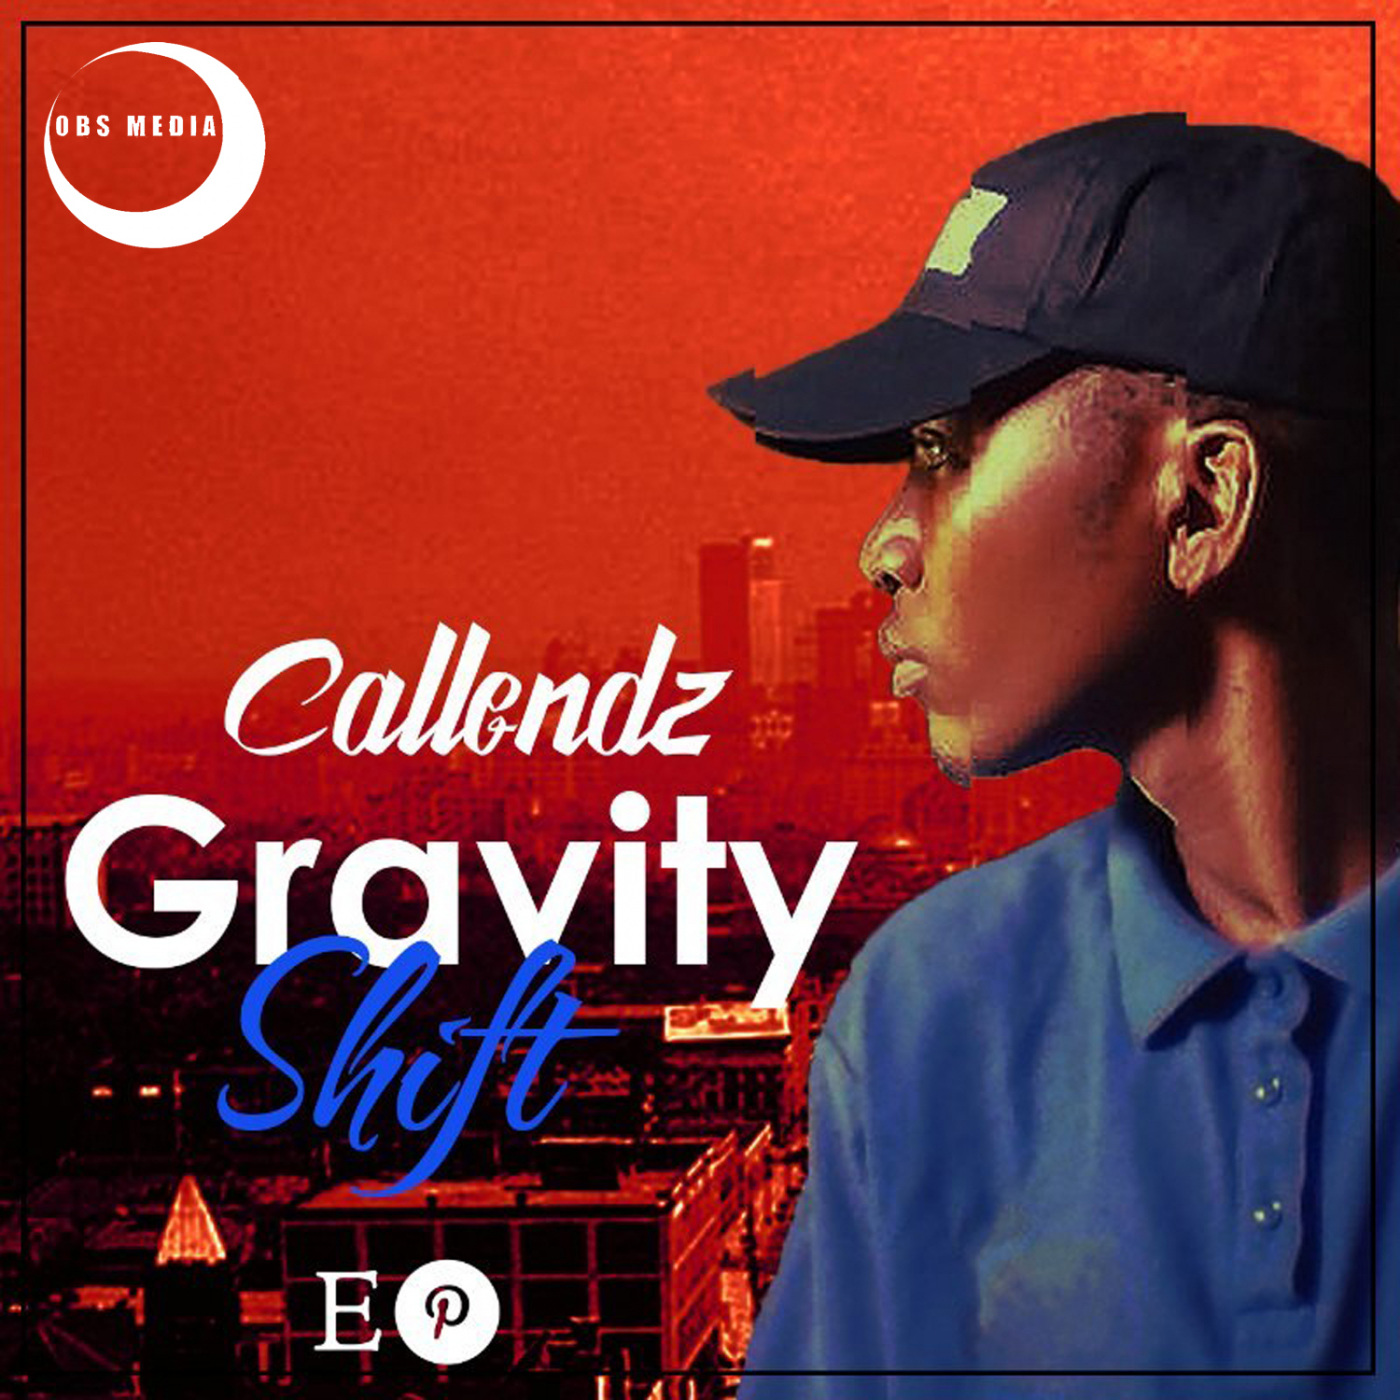 Callendz - Gravity Shift / OBS Media